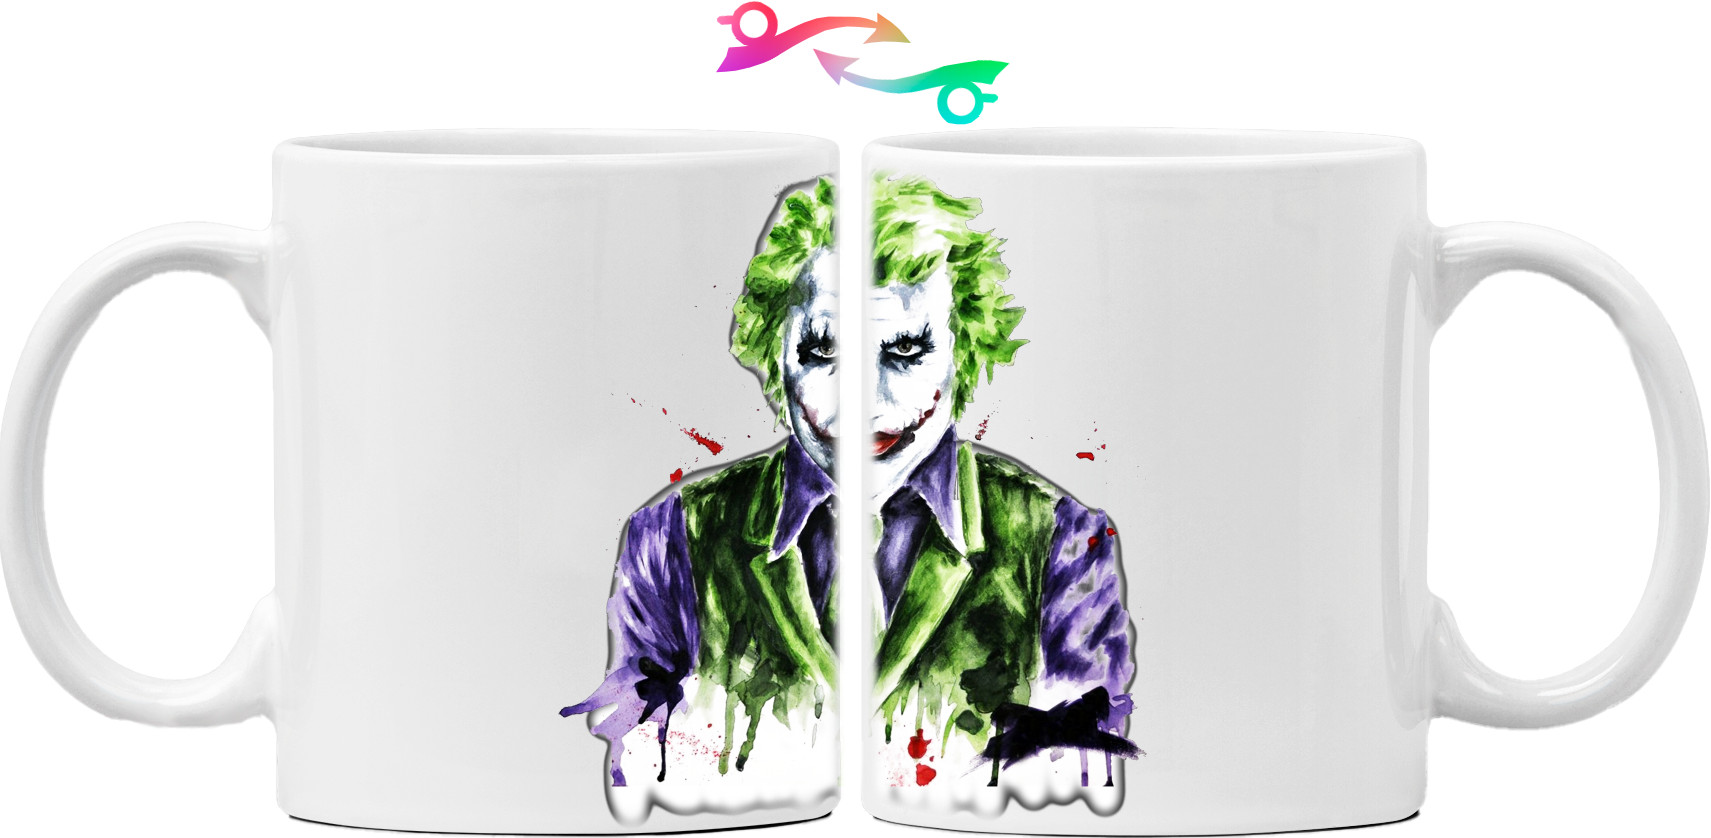 Joker 3